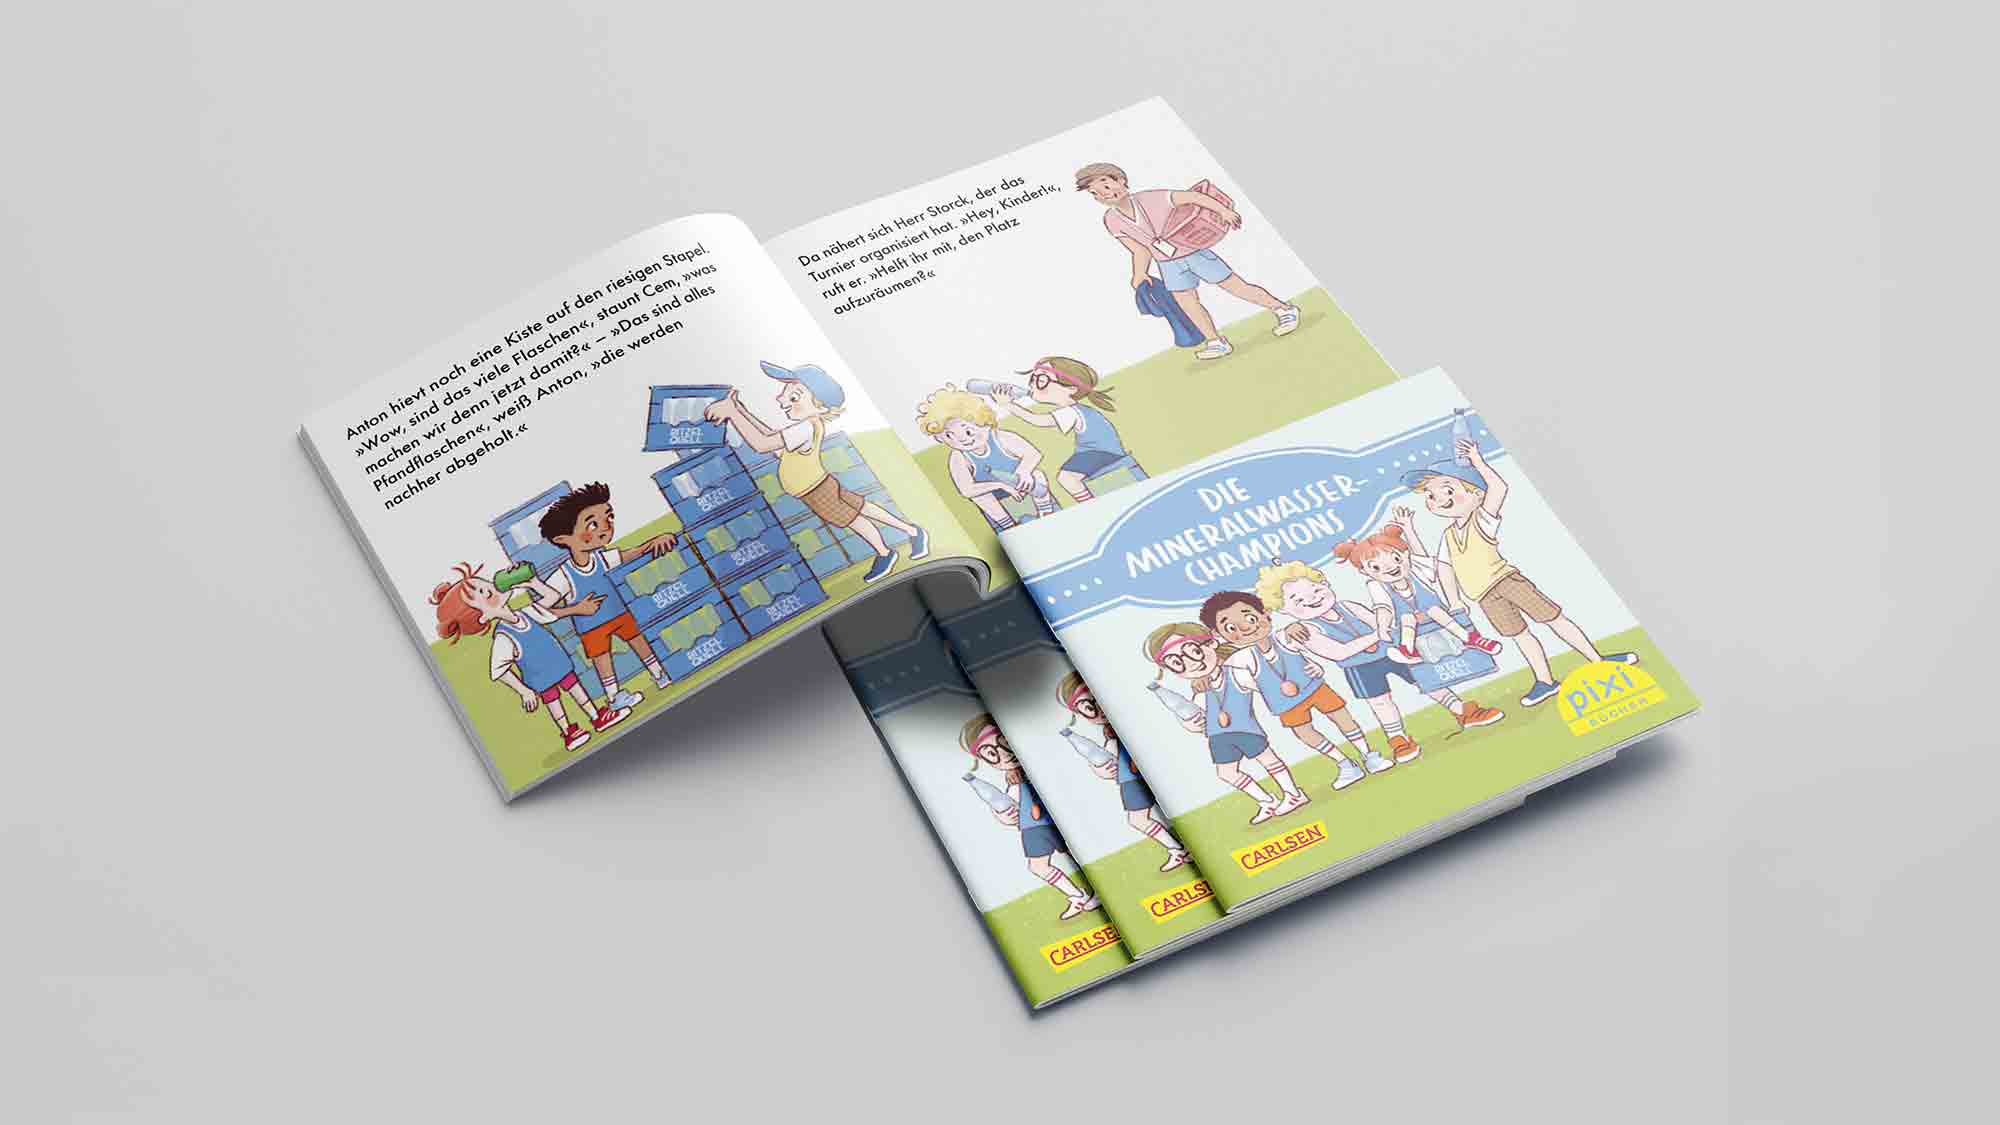 Neues Pixi Buch für Kinder: die Mineralwasser Champions